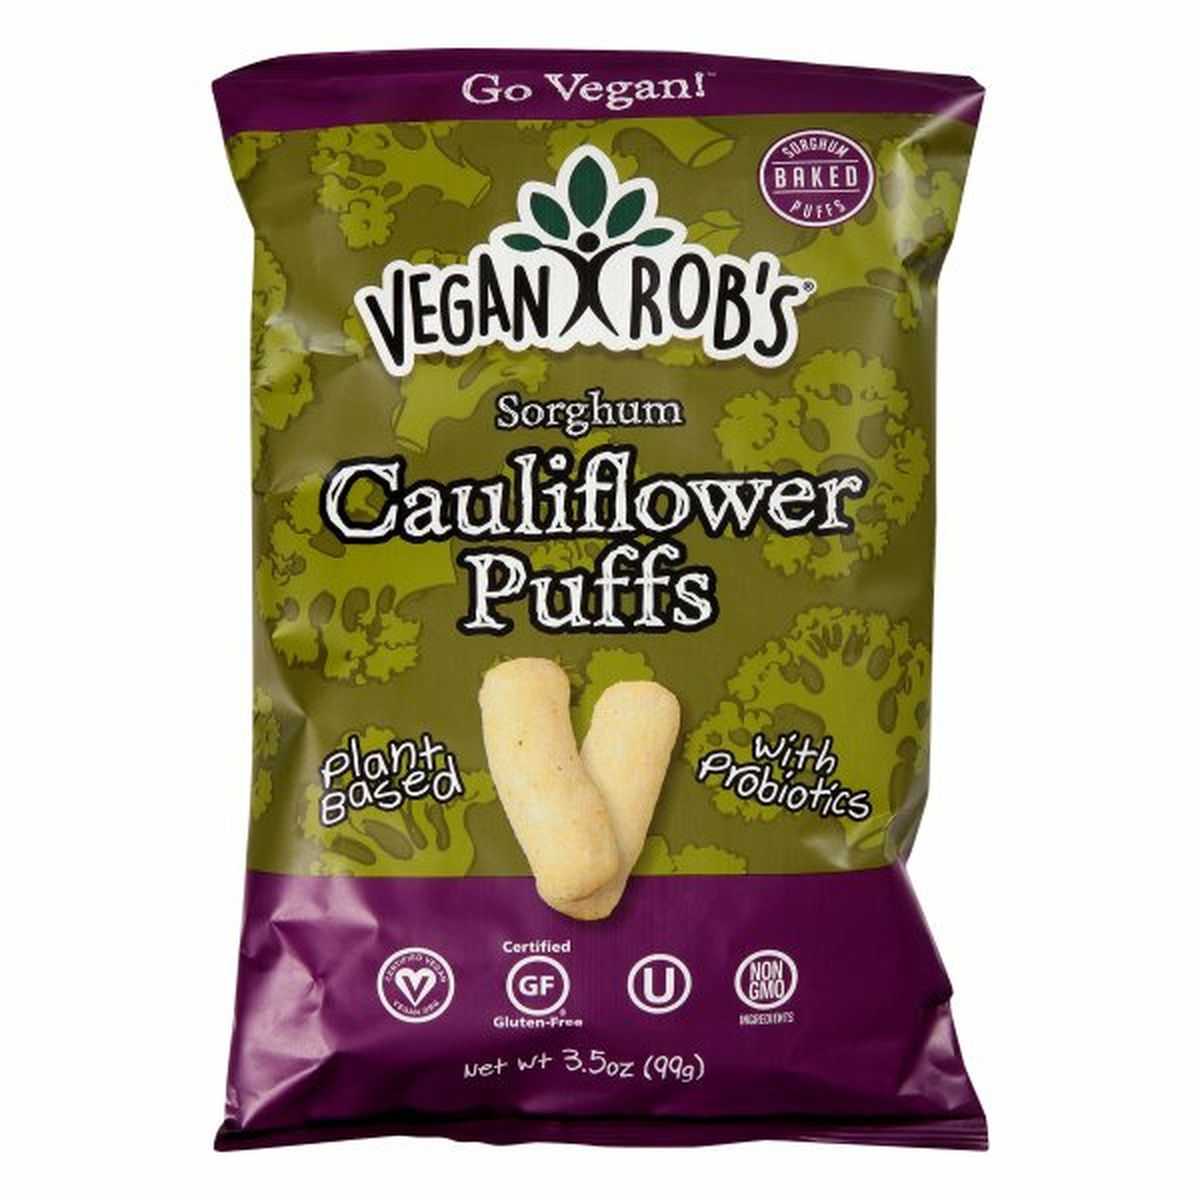 Calories in Vegan Rob's Sorghum Puffs, Cauliflower